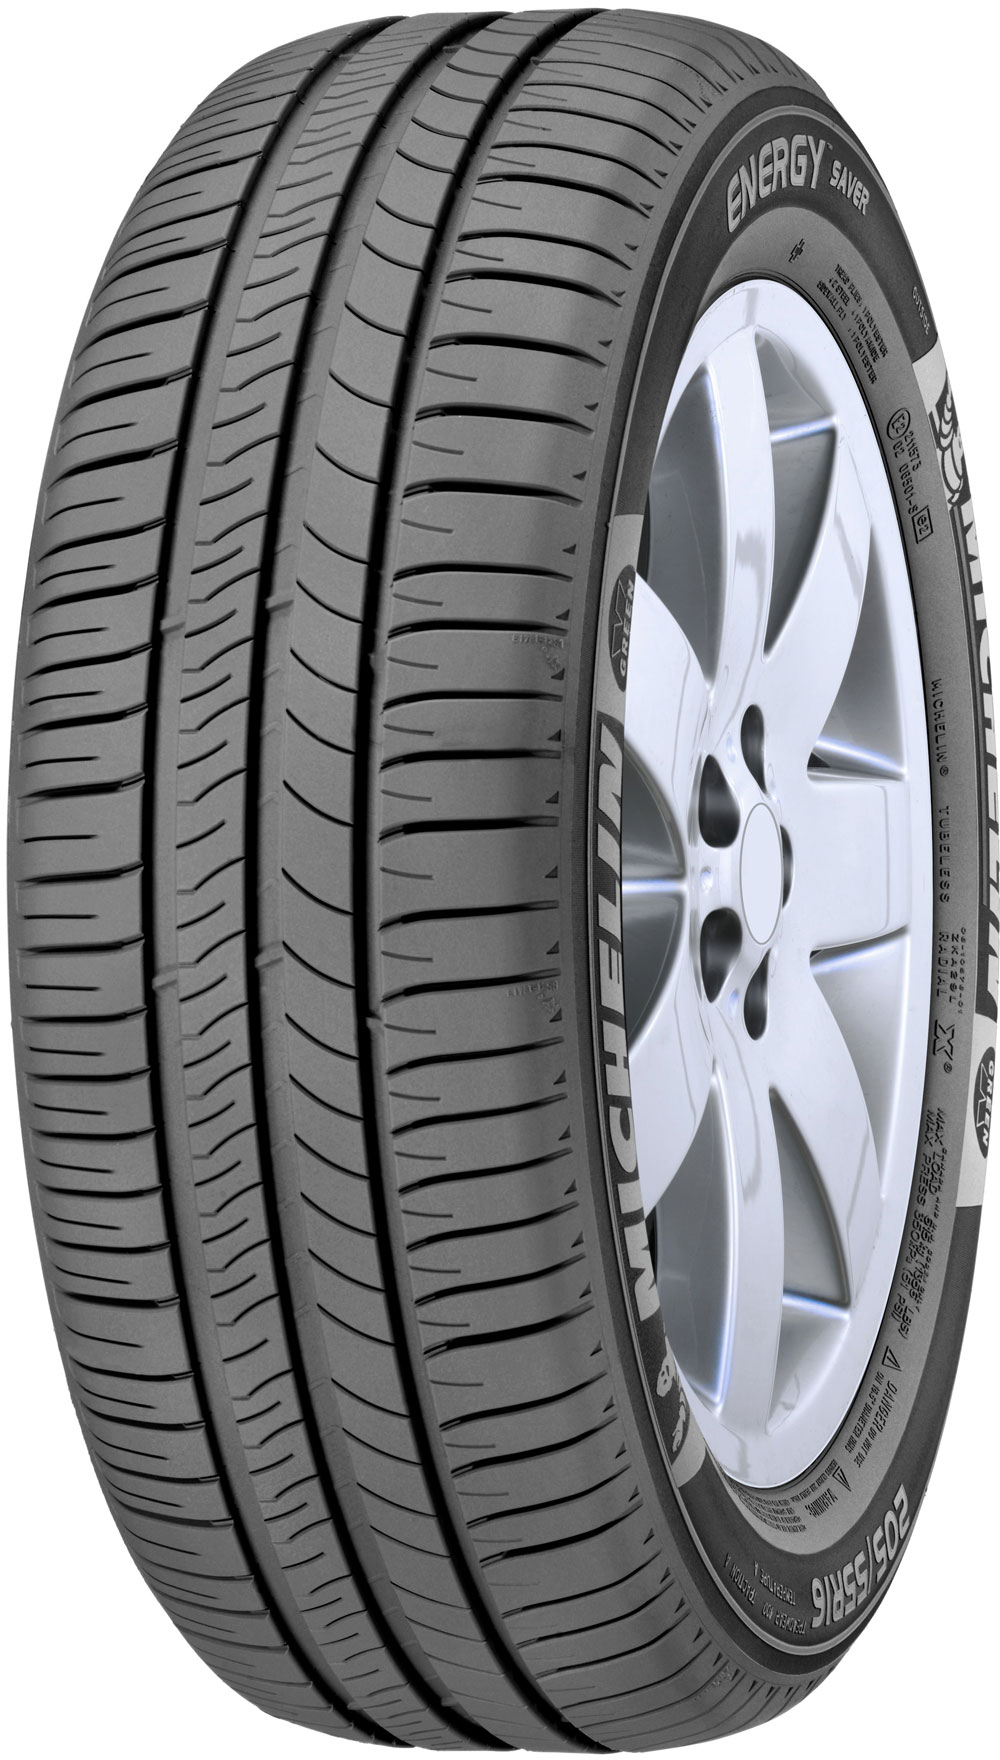 Автомобилни гуми MICHELIN EN SAVER MERCEDES 205/55 R16 91W